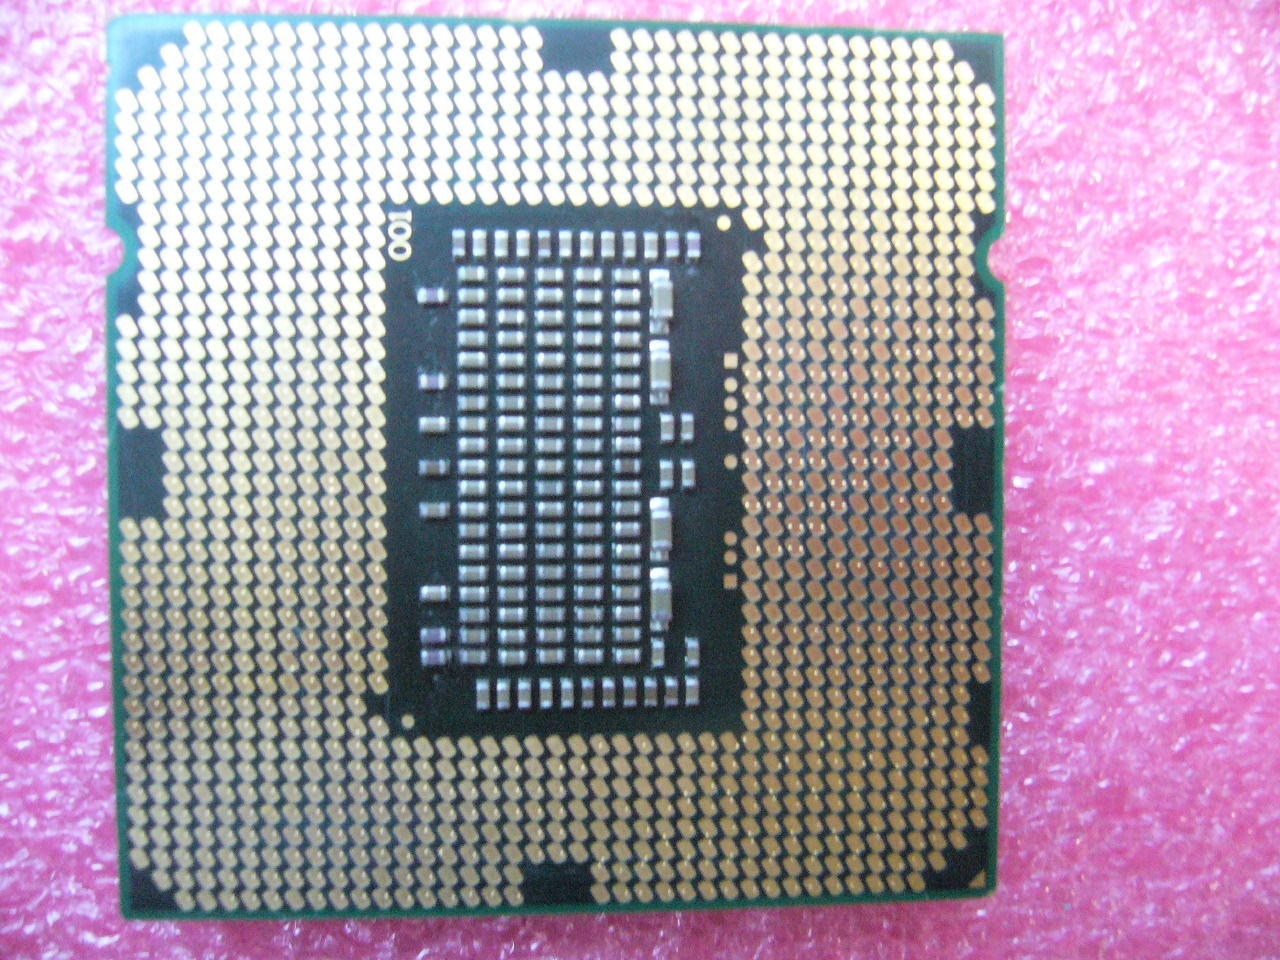 QTY 1x INTEL Xeon CPU X3440 2.53GHZ/8MB LGA1156 SLBLF - Click Image to Close